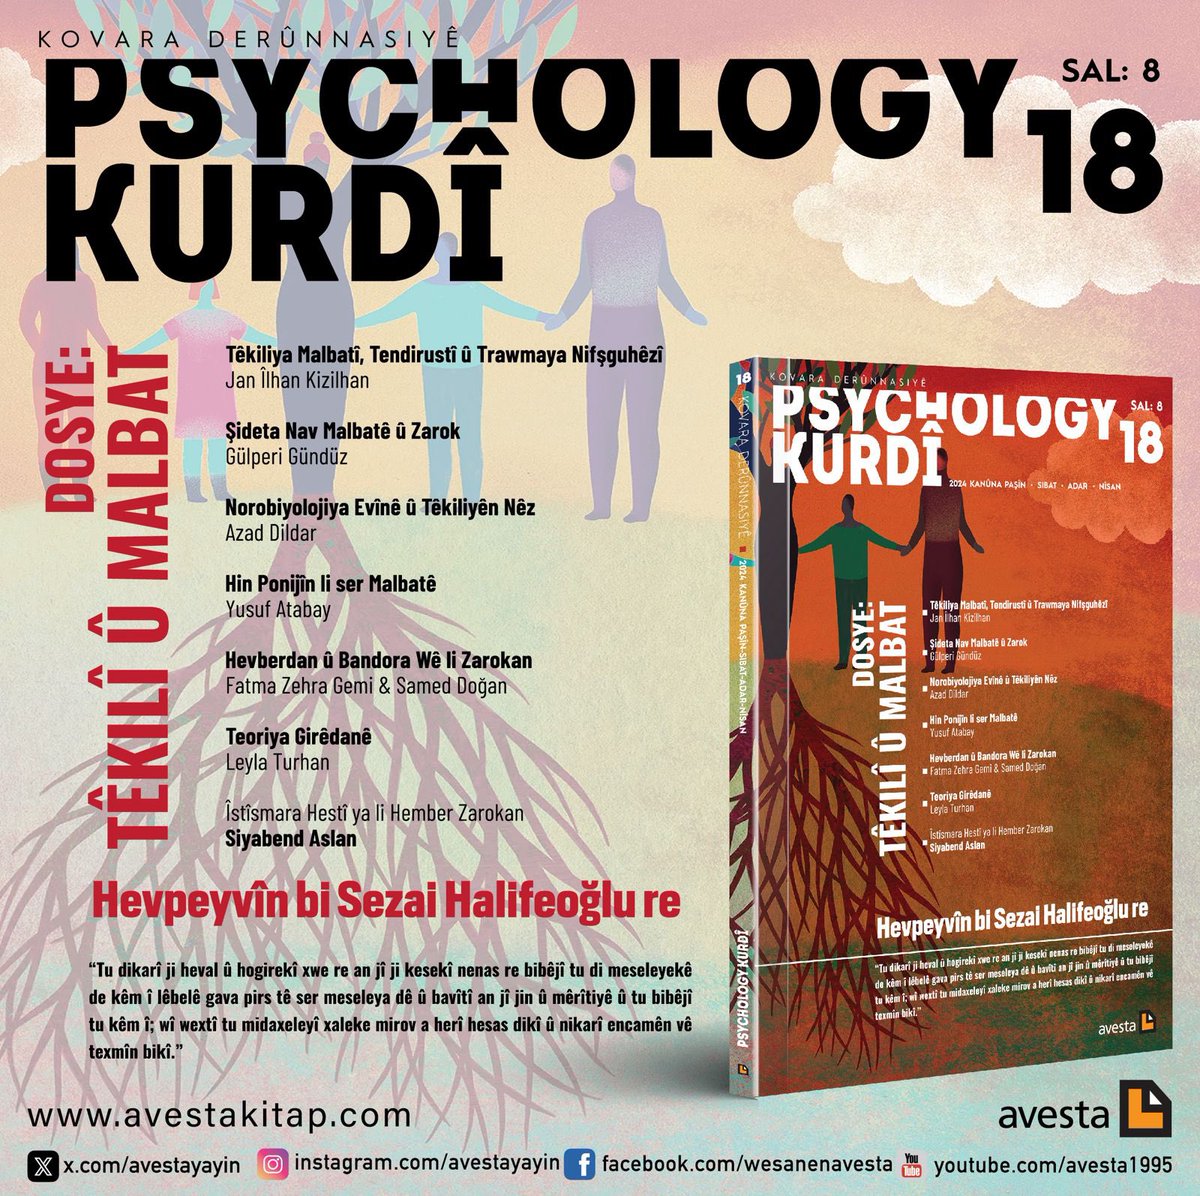 Kovara Derûnnasiyê Psychology Kurdî bi dosyeya 'Têkilî û Malbat' derket. Hûn dikarin hejmara 18an û hejmarên wê yên dîtir ji malpera me peyda bikin. avestakitap.com/psychology-kur…